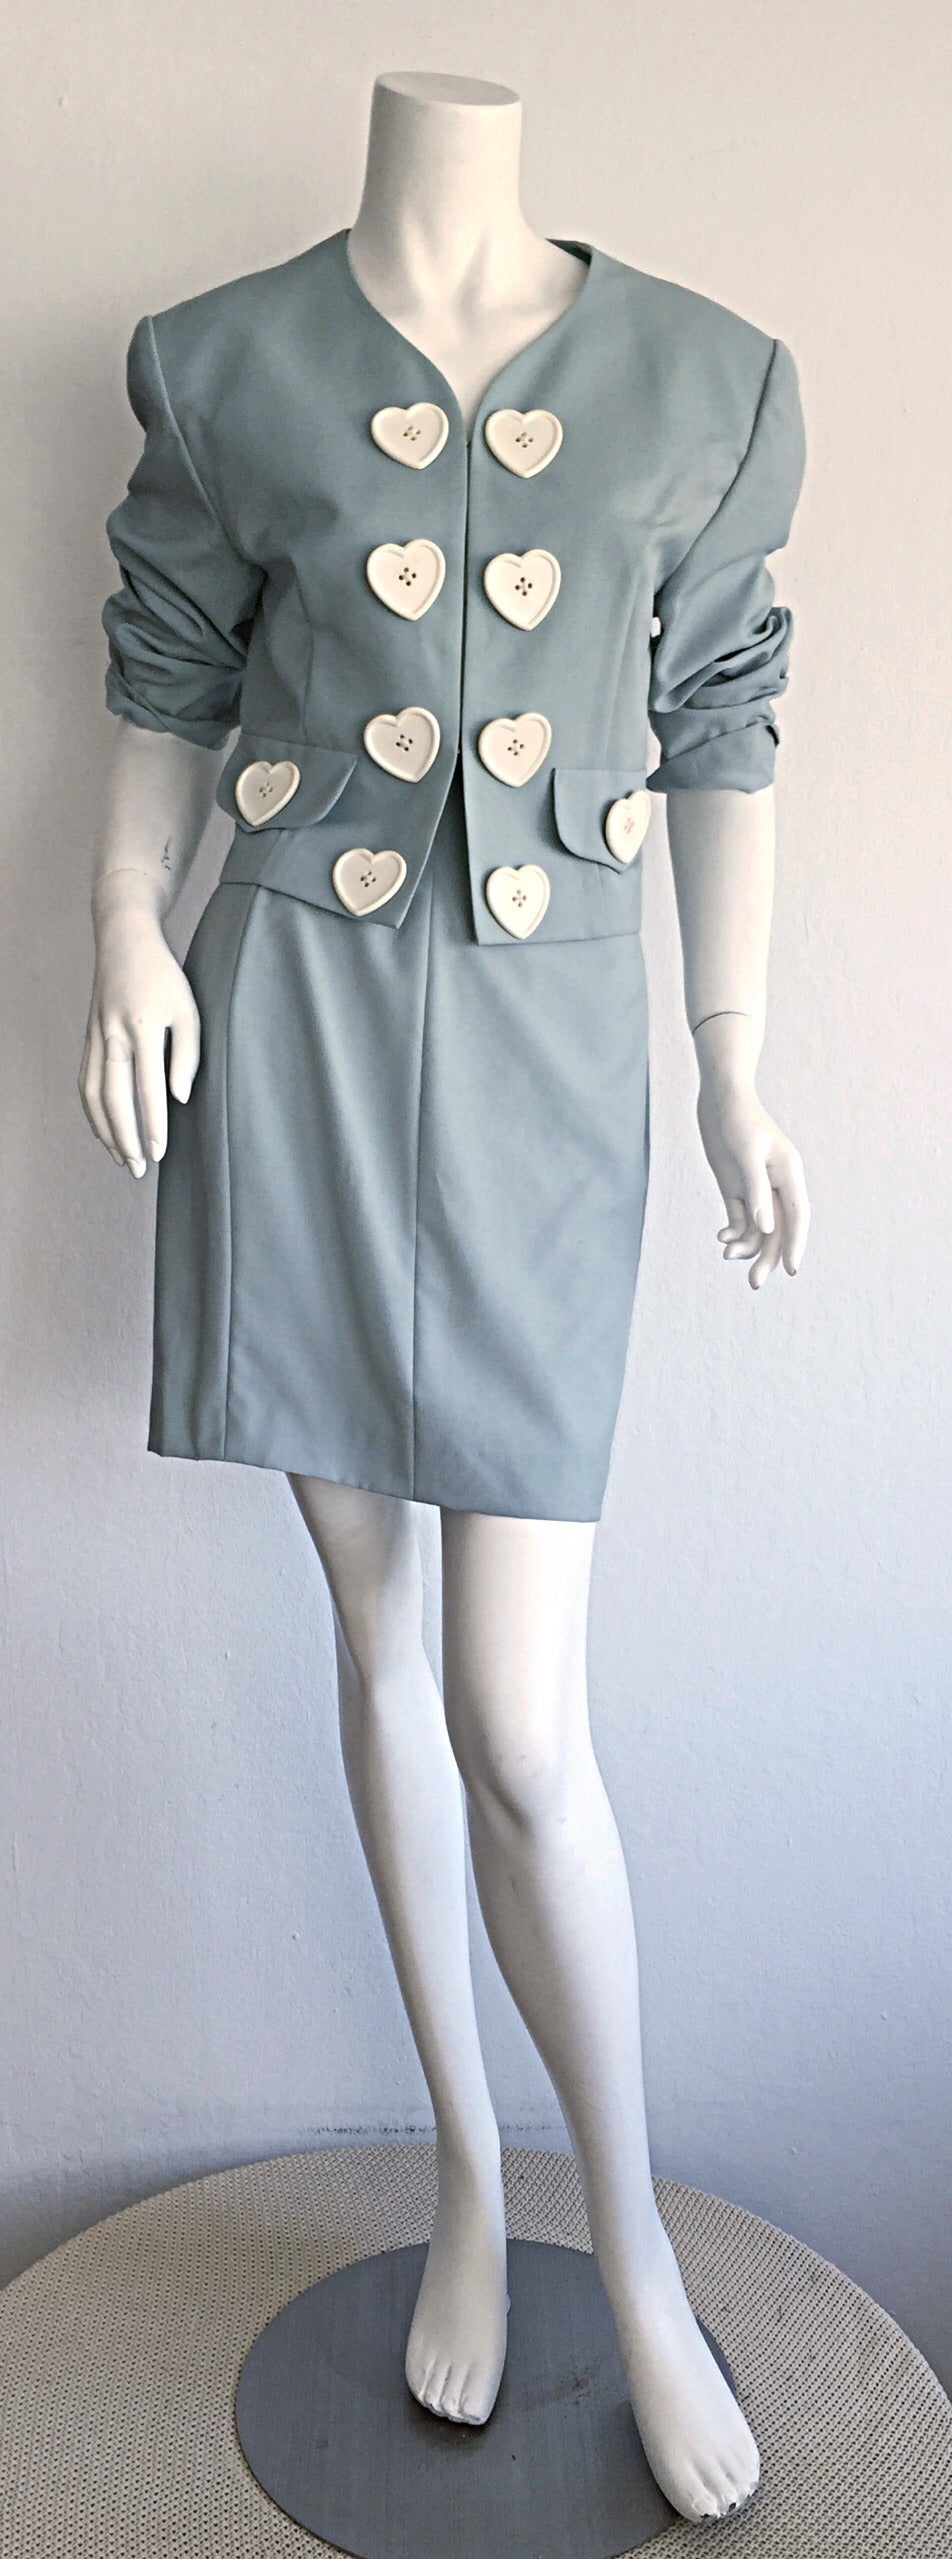 moschino skirt suit